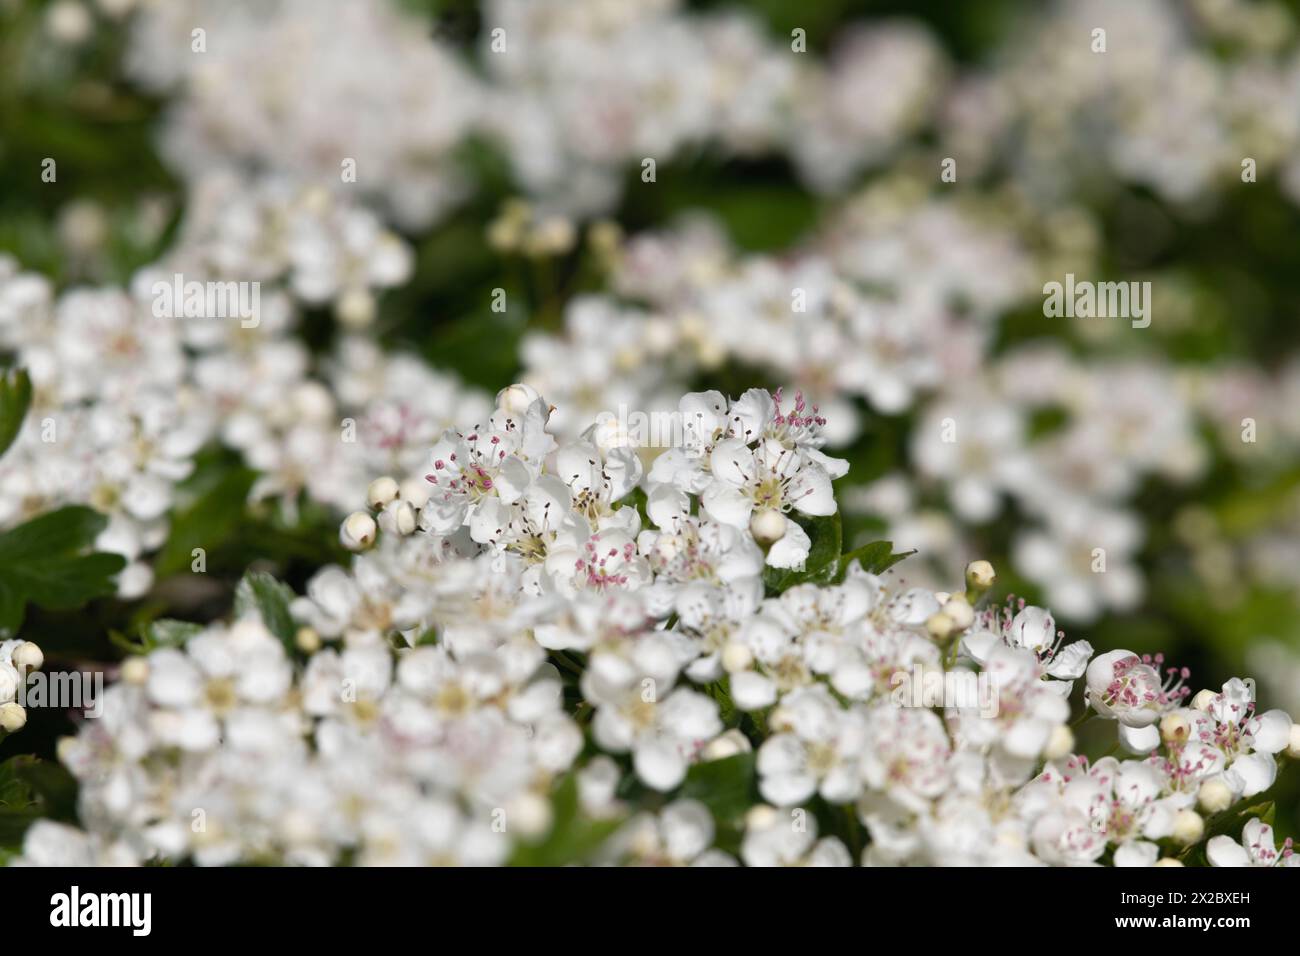 Weiße Blüten auf einem gewöhnlichen Weißdornbusch (Crataegus monogyna), der im Frühjahr in einer Hecke blüht Stockfoto